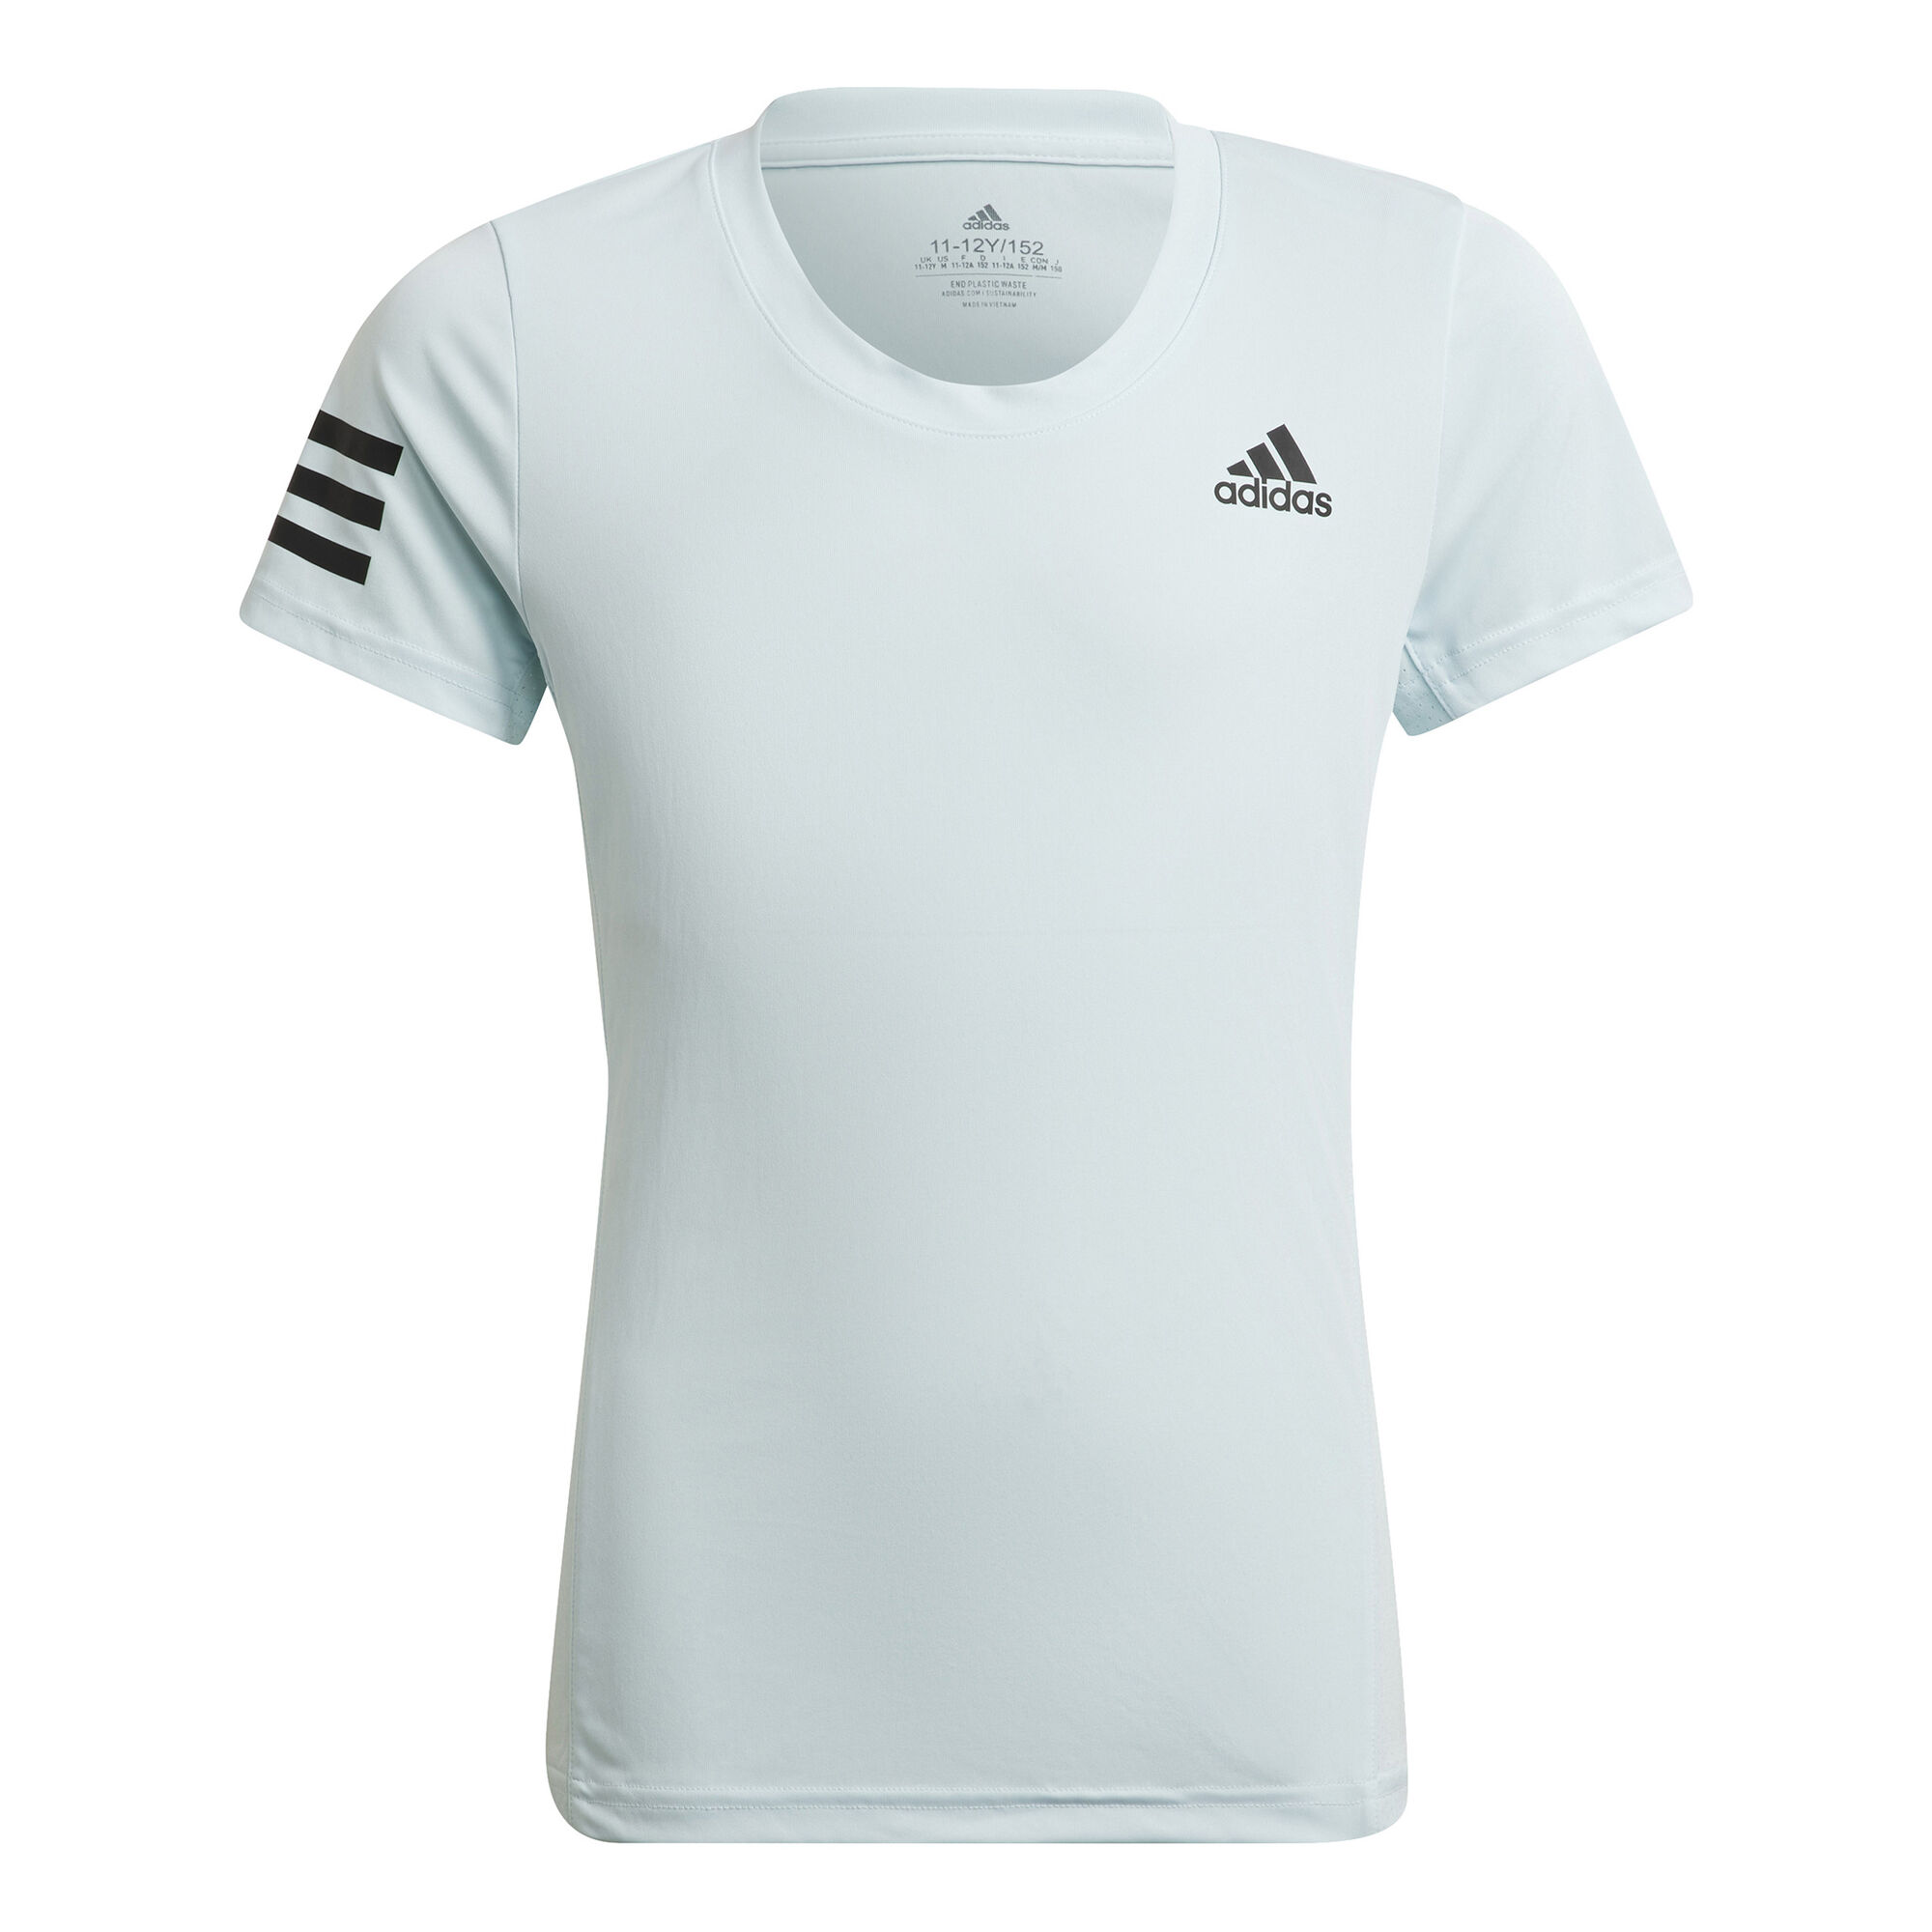 voorspelling Bedelen samenzwering adidas Club T-shirt Meisjes - Blauw online kopen | Tennis-Point